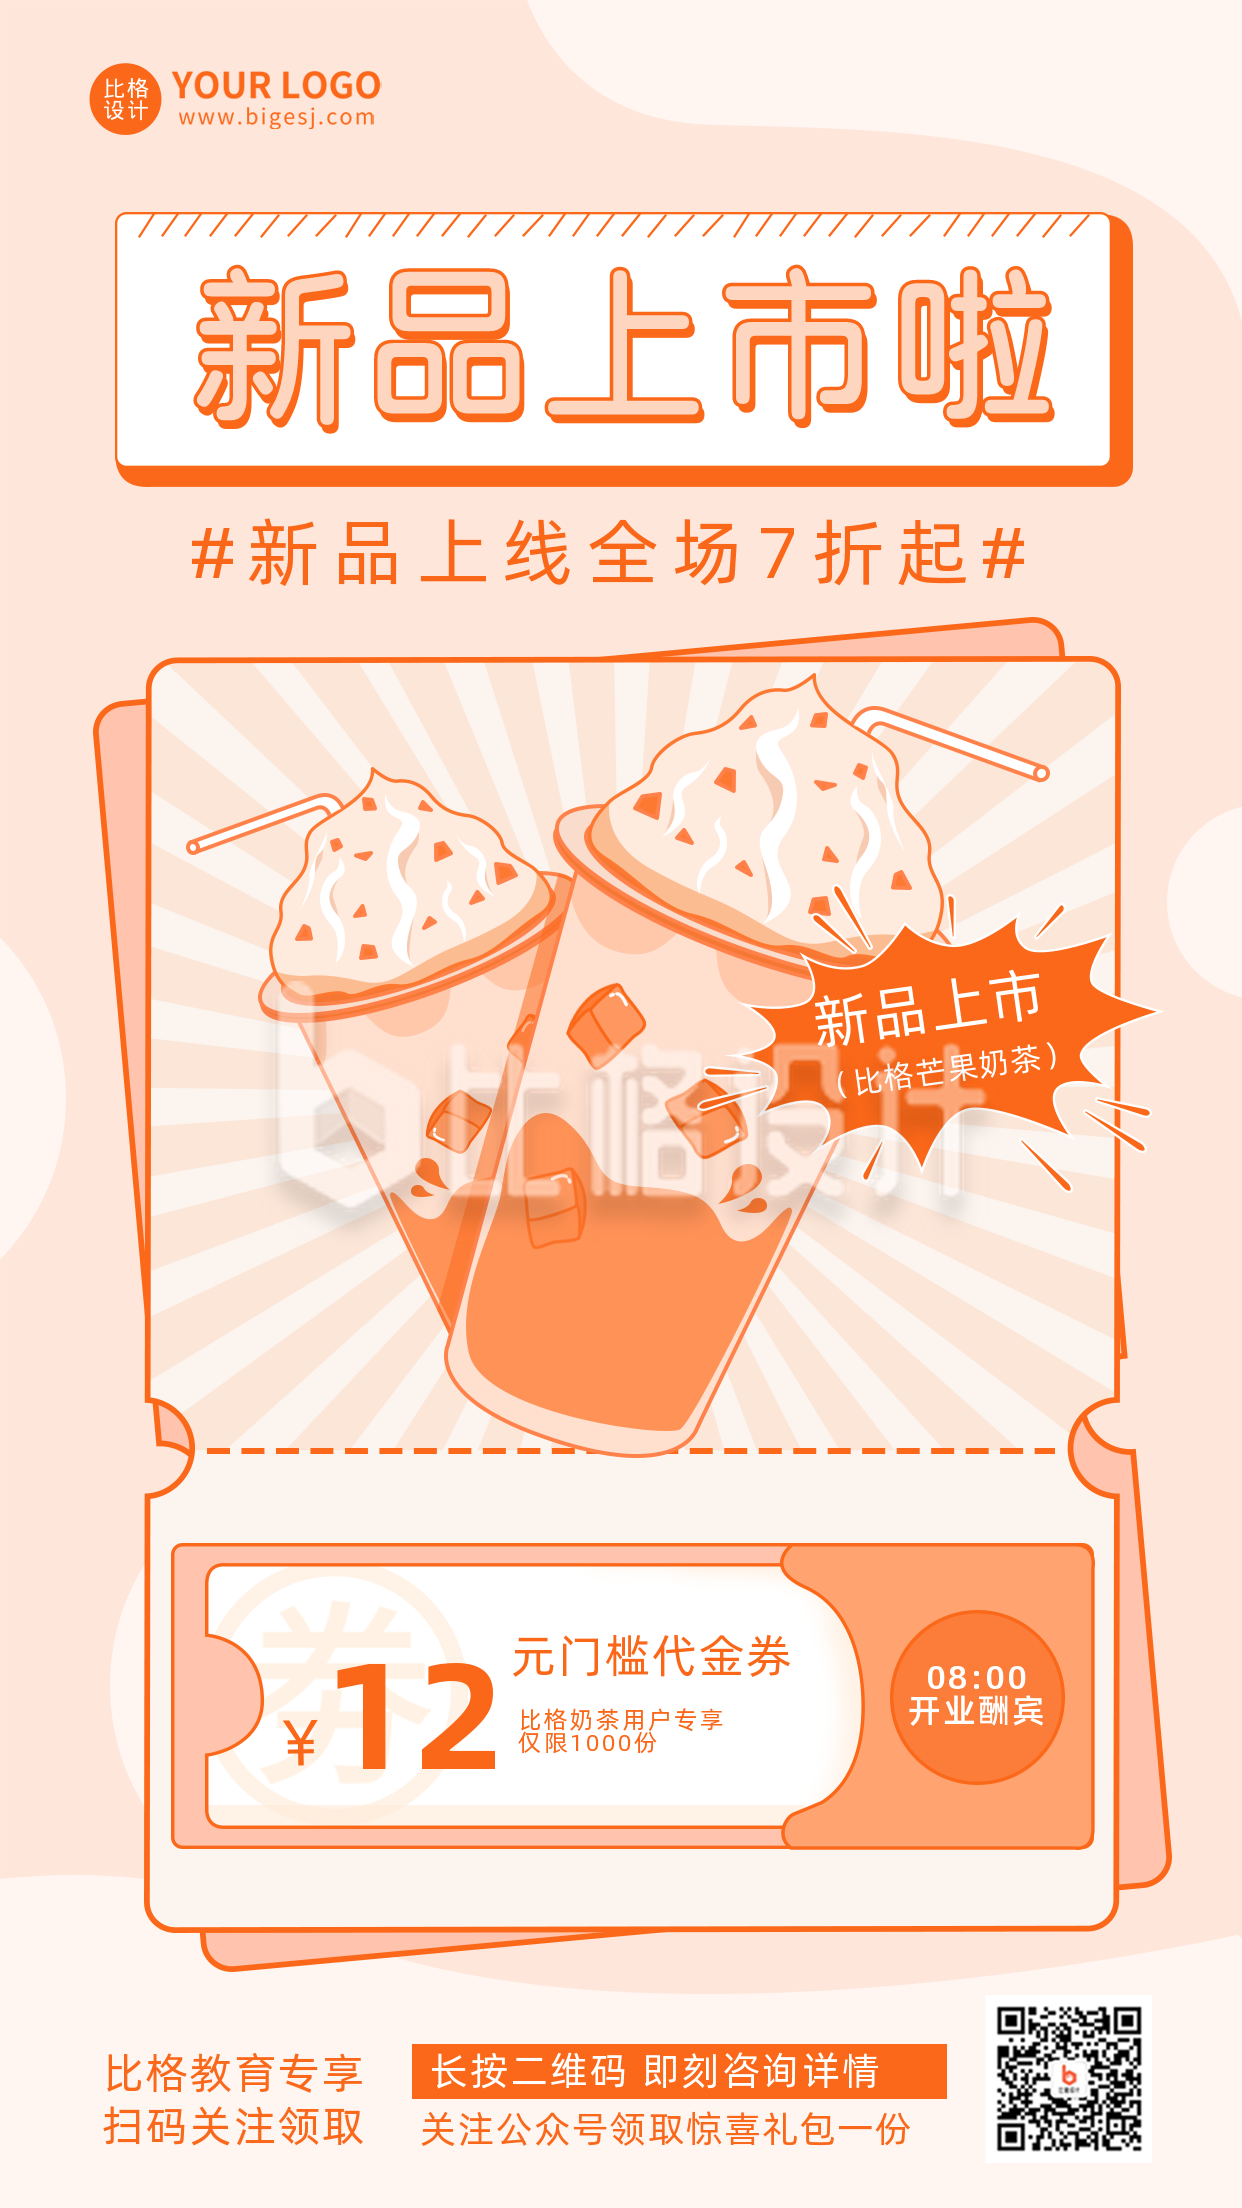 奶茶优惠活动新品上市活动宣传手机海报